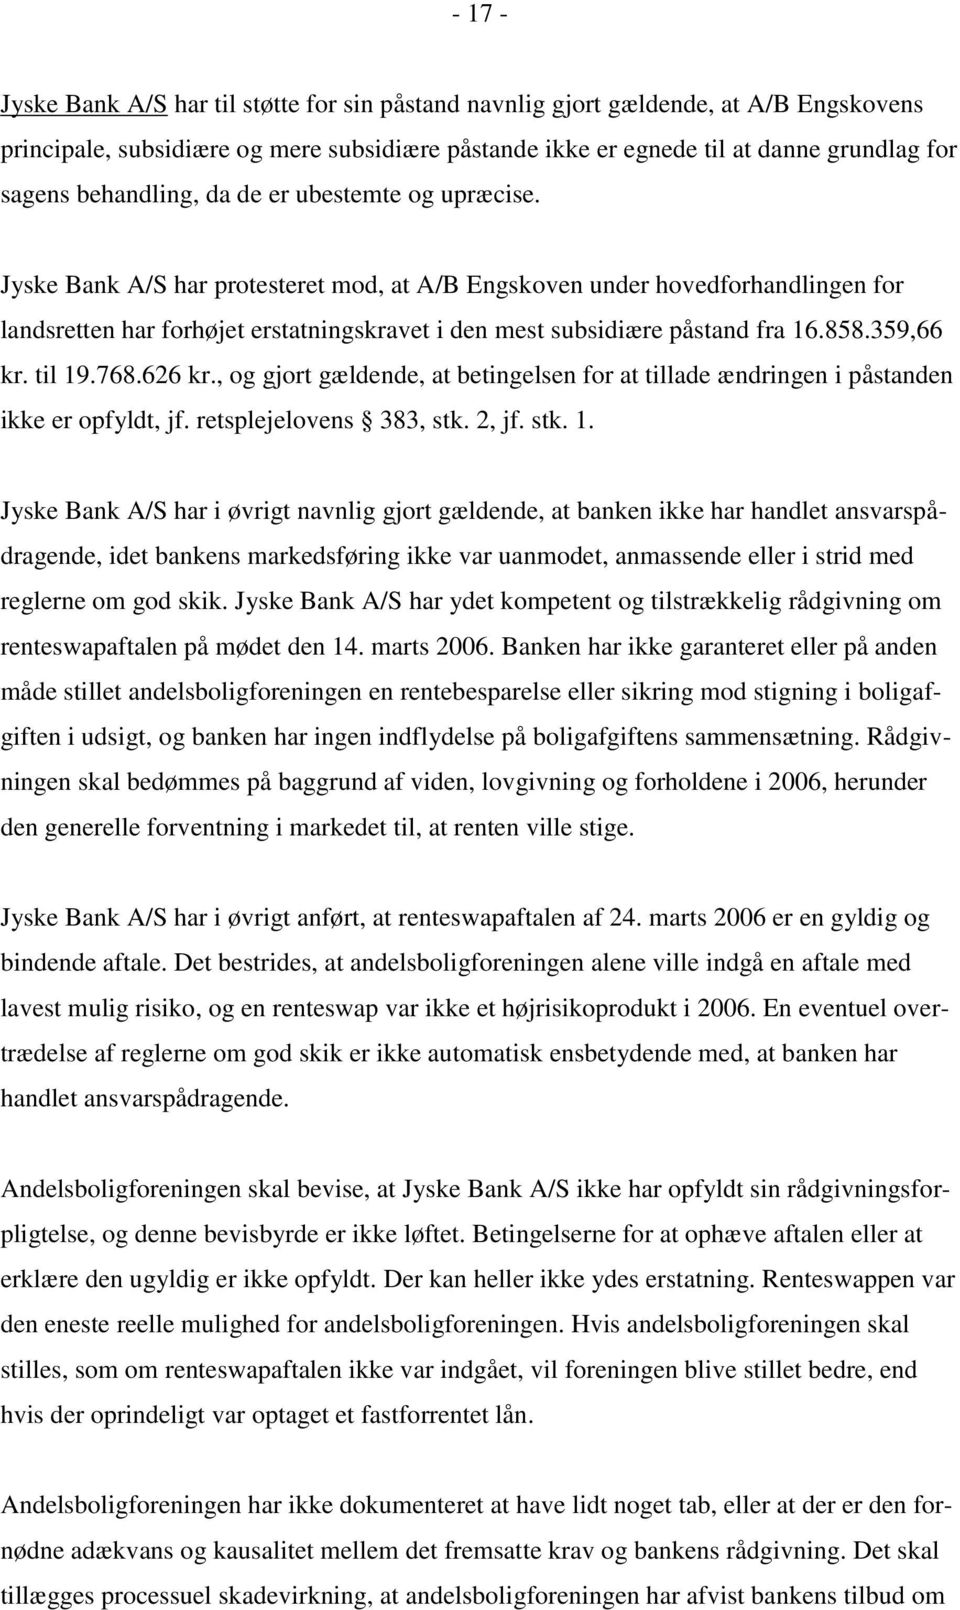 Jyske Bank A/S har protesteret mod, at A/B Engskoven under hovedforhandlingen for landsretten har forhøjet erstatningskravet i den mest subsidiære påstand fra 16.858.359,66 kr. til 19.768.626 kr.